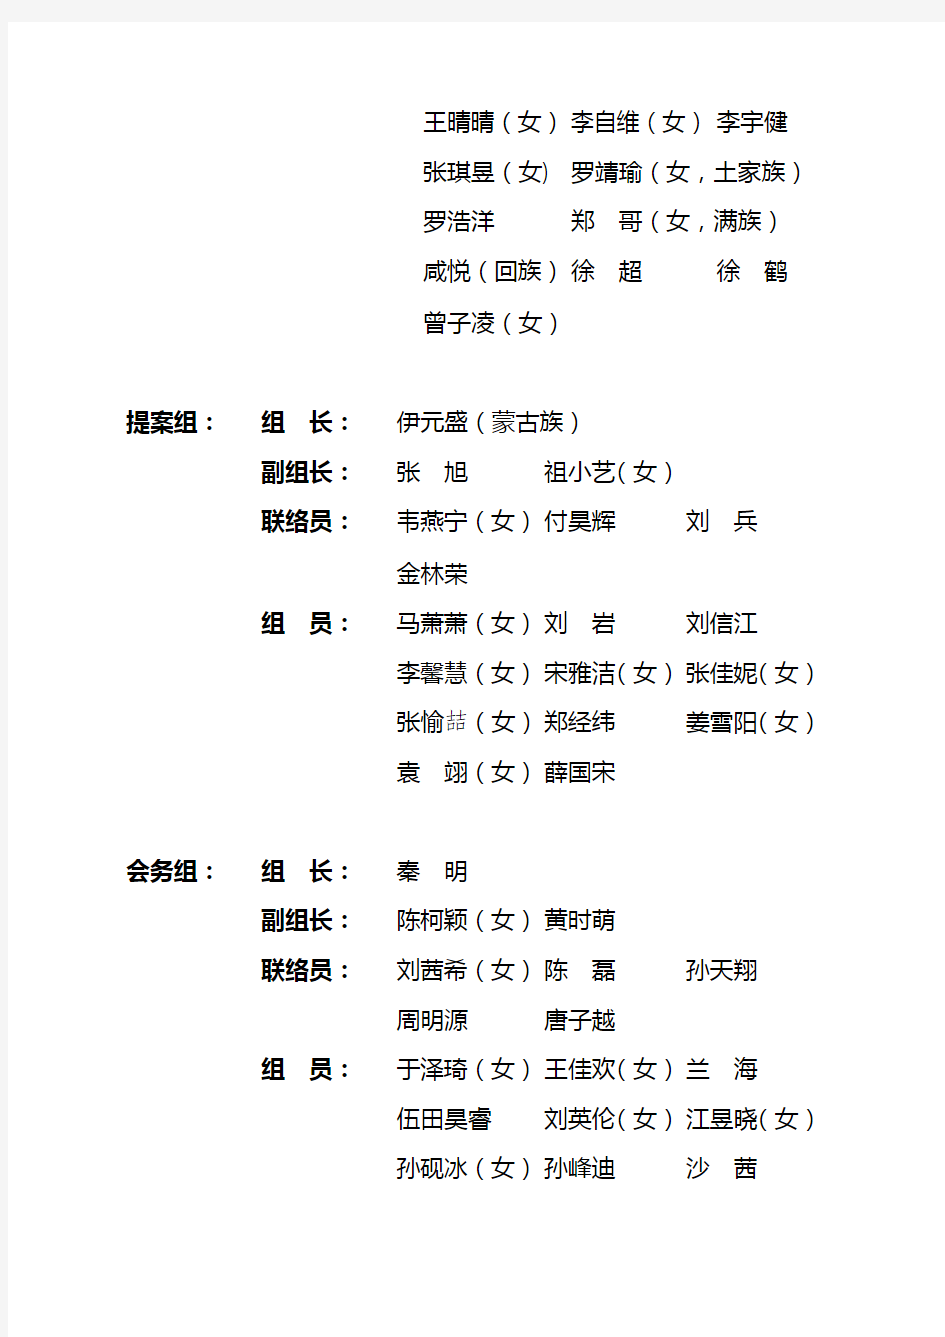 北京交通大学第二十二次学生代表大会筹备委员会人员名单